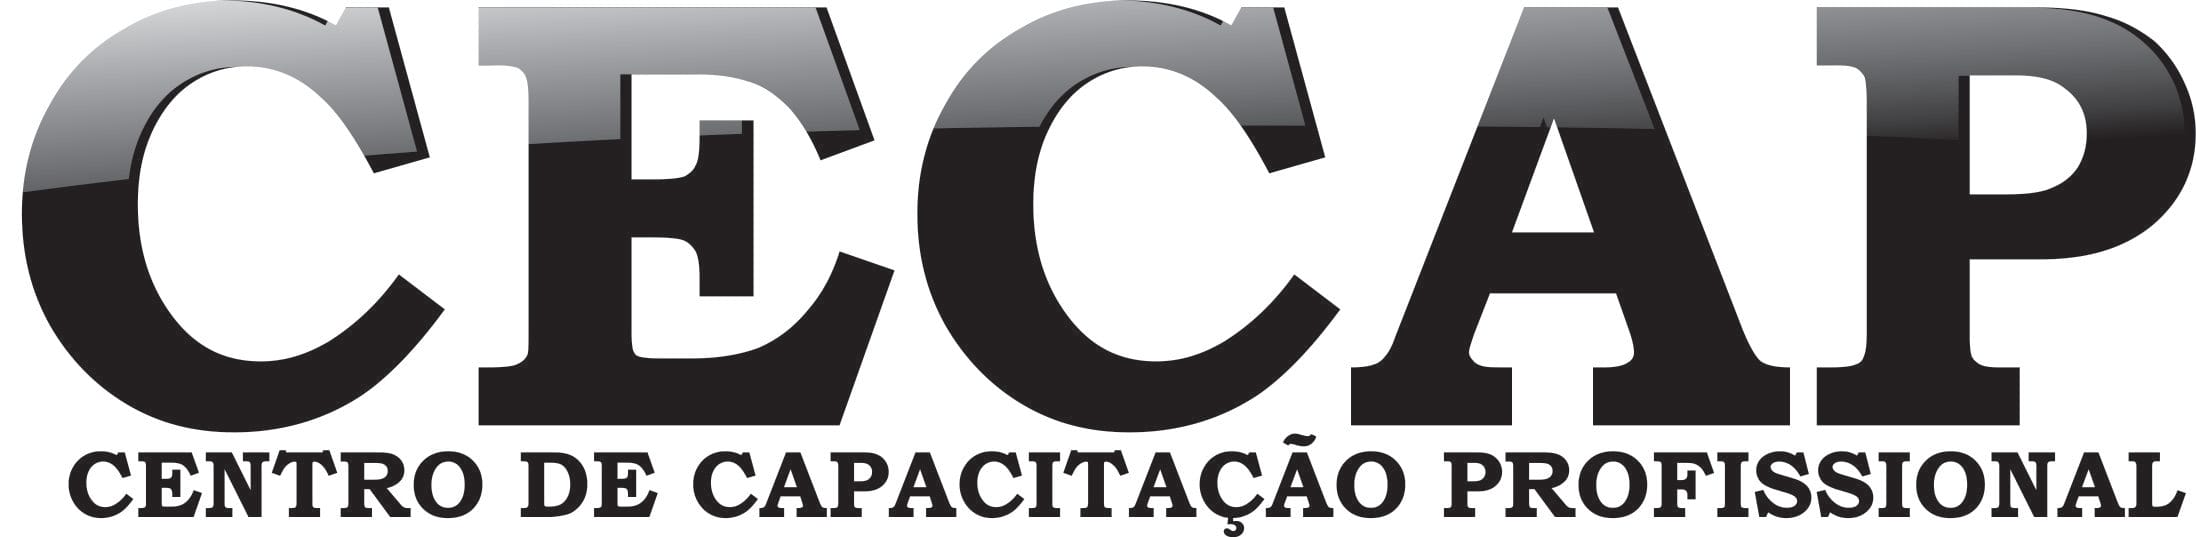 CECAP  - Centro de Capacitação Profissional